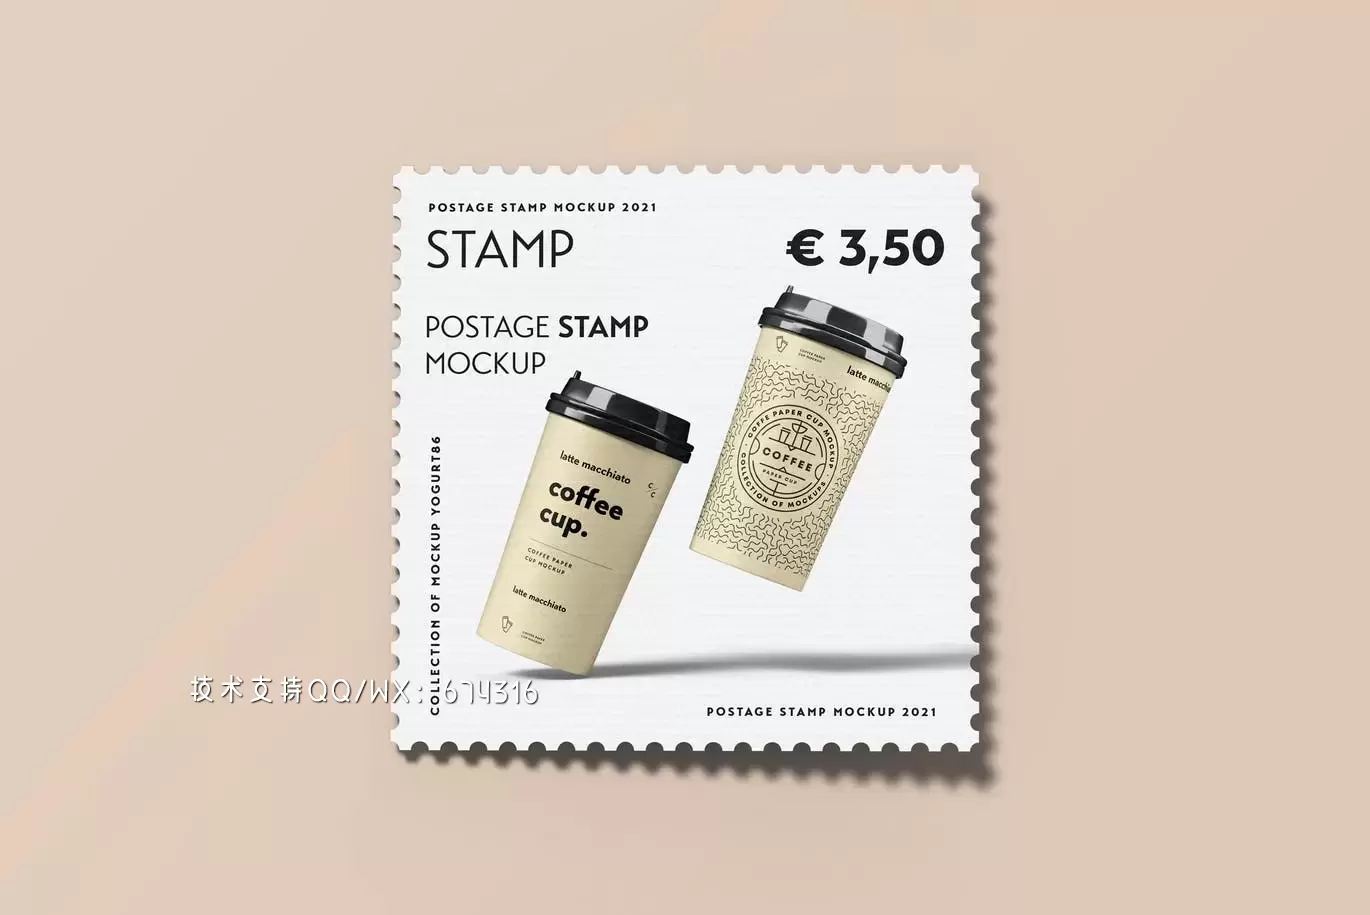 时尚高端专业的高品质邮票设计VI样机展示模型mockups免费下载插图1